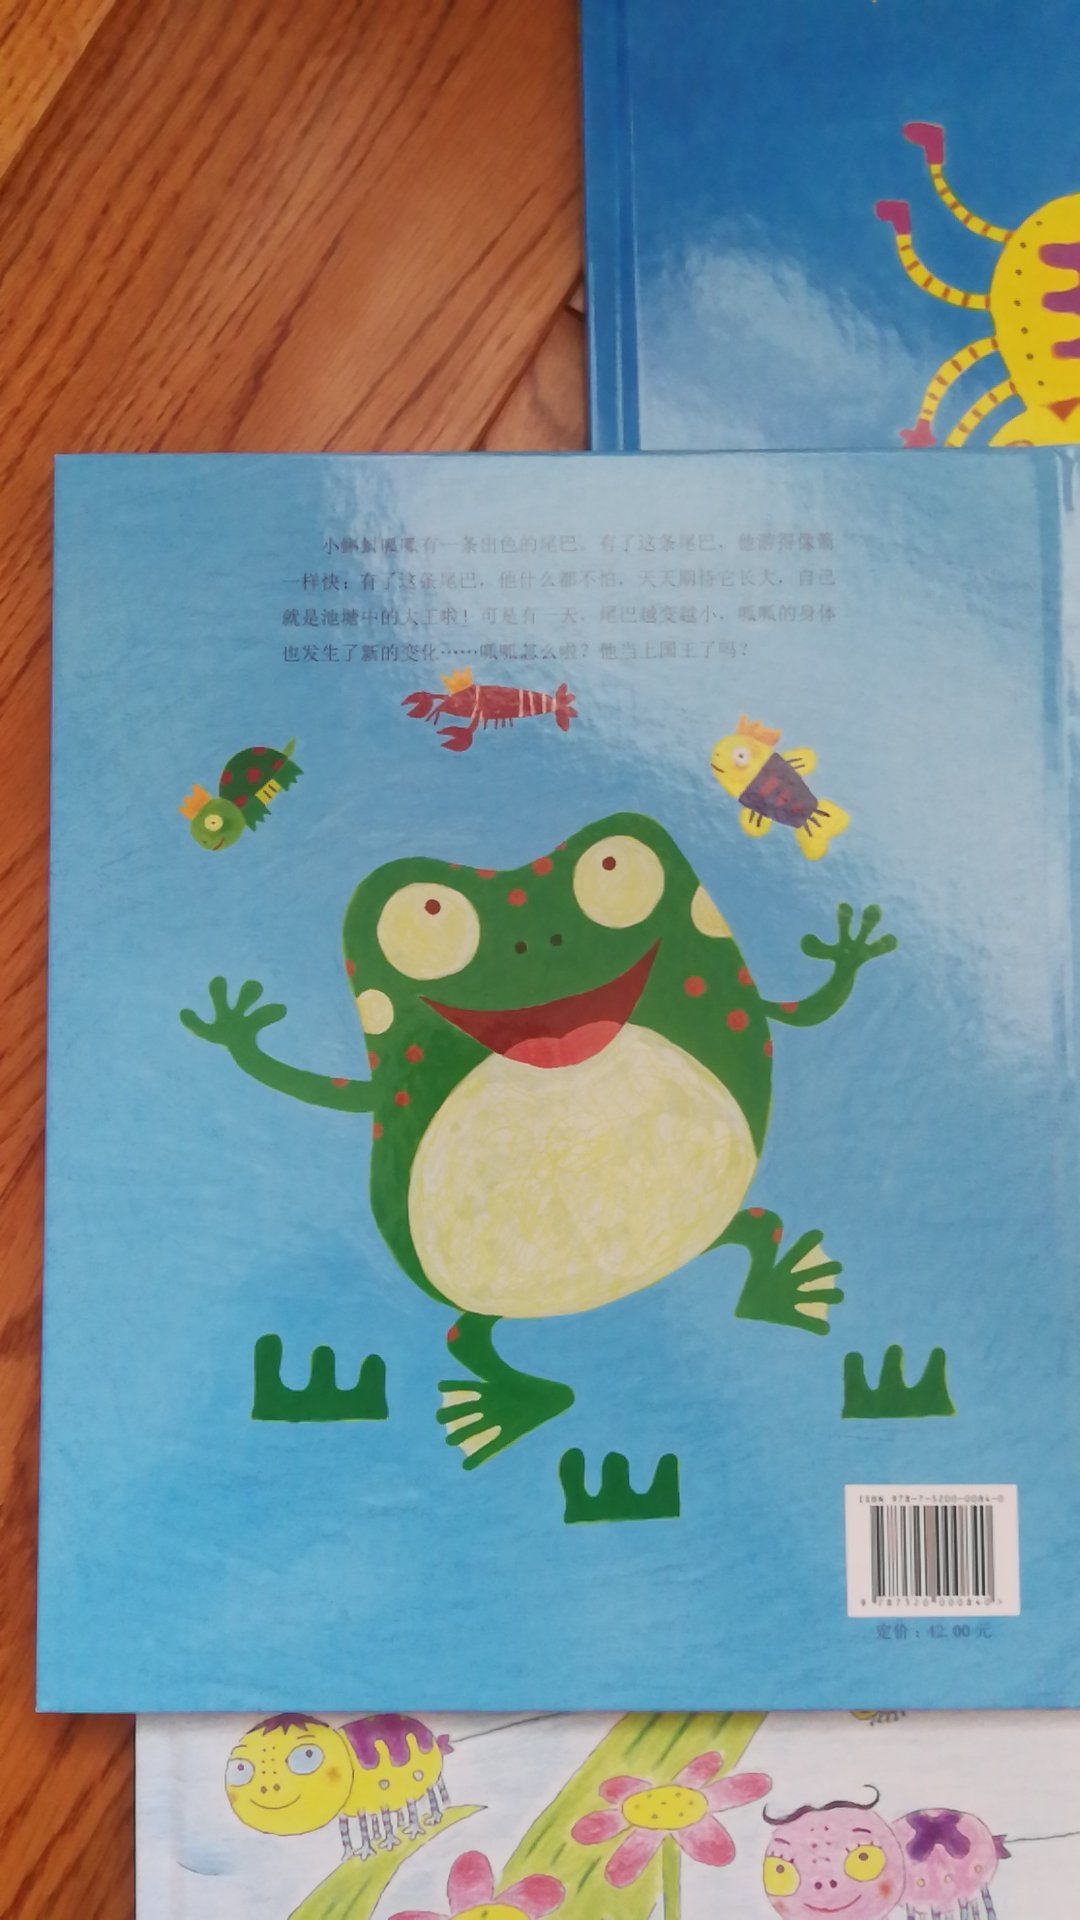 鲁拉鲁先生的作者伊东宽的作品，小蝌蚪小蜘蛛可爱的小故事，让小小的孩子学习勇气成长和智慧。好书